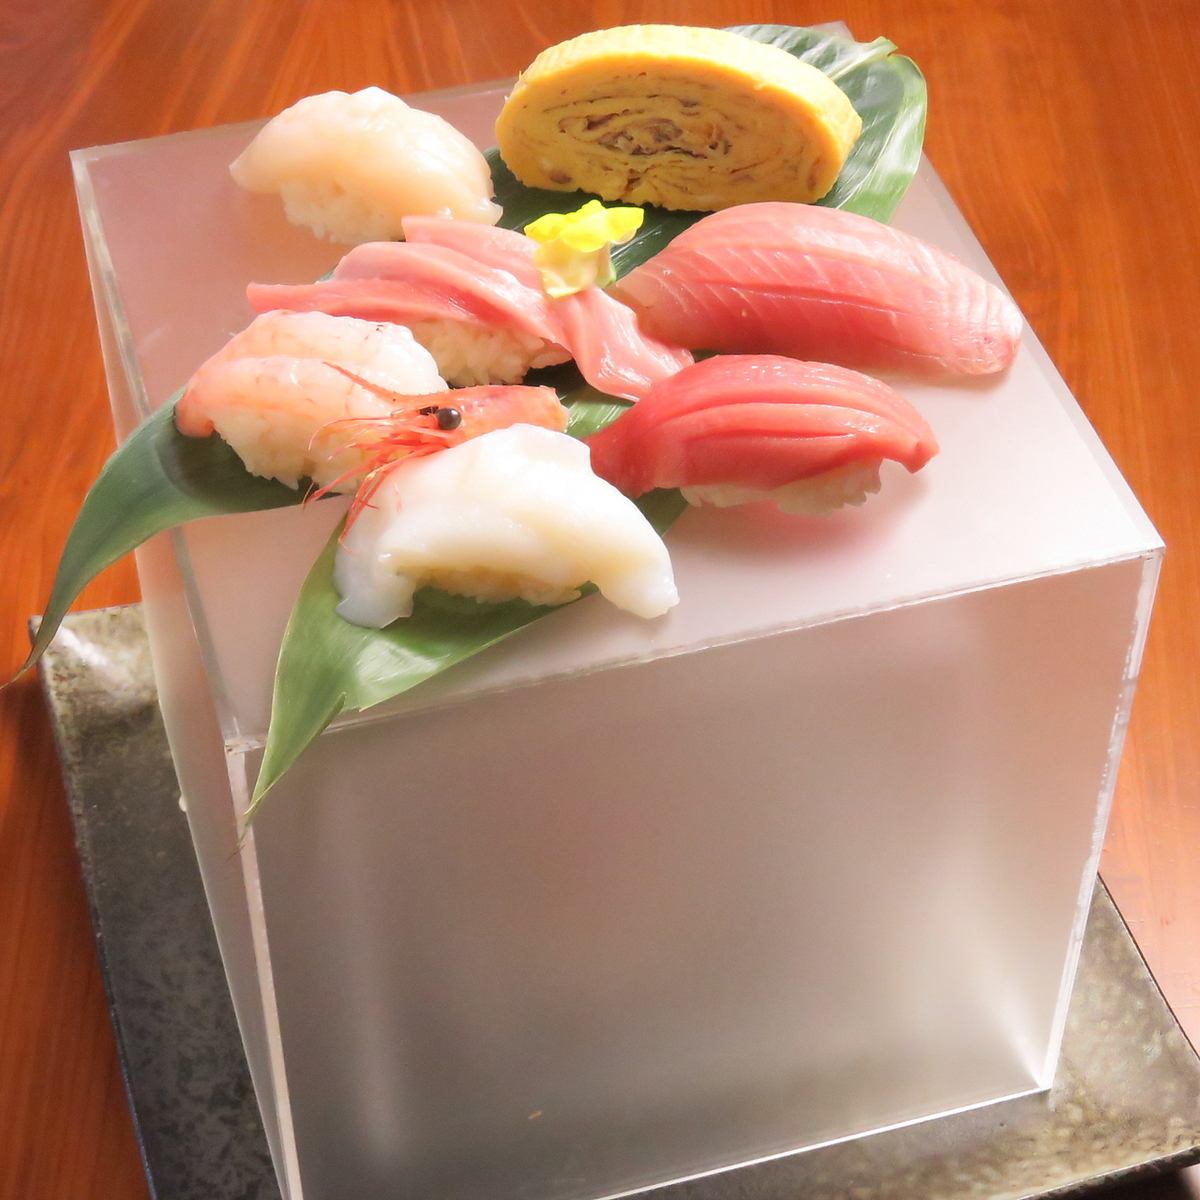 非常适合庆祝活动的寿司盒。可在周年纪念套餐中使用♪